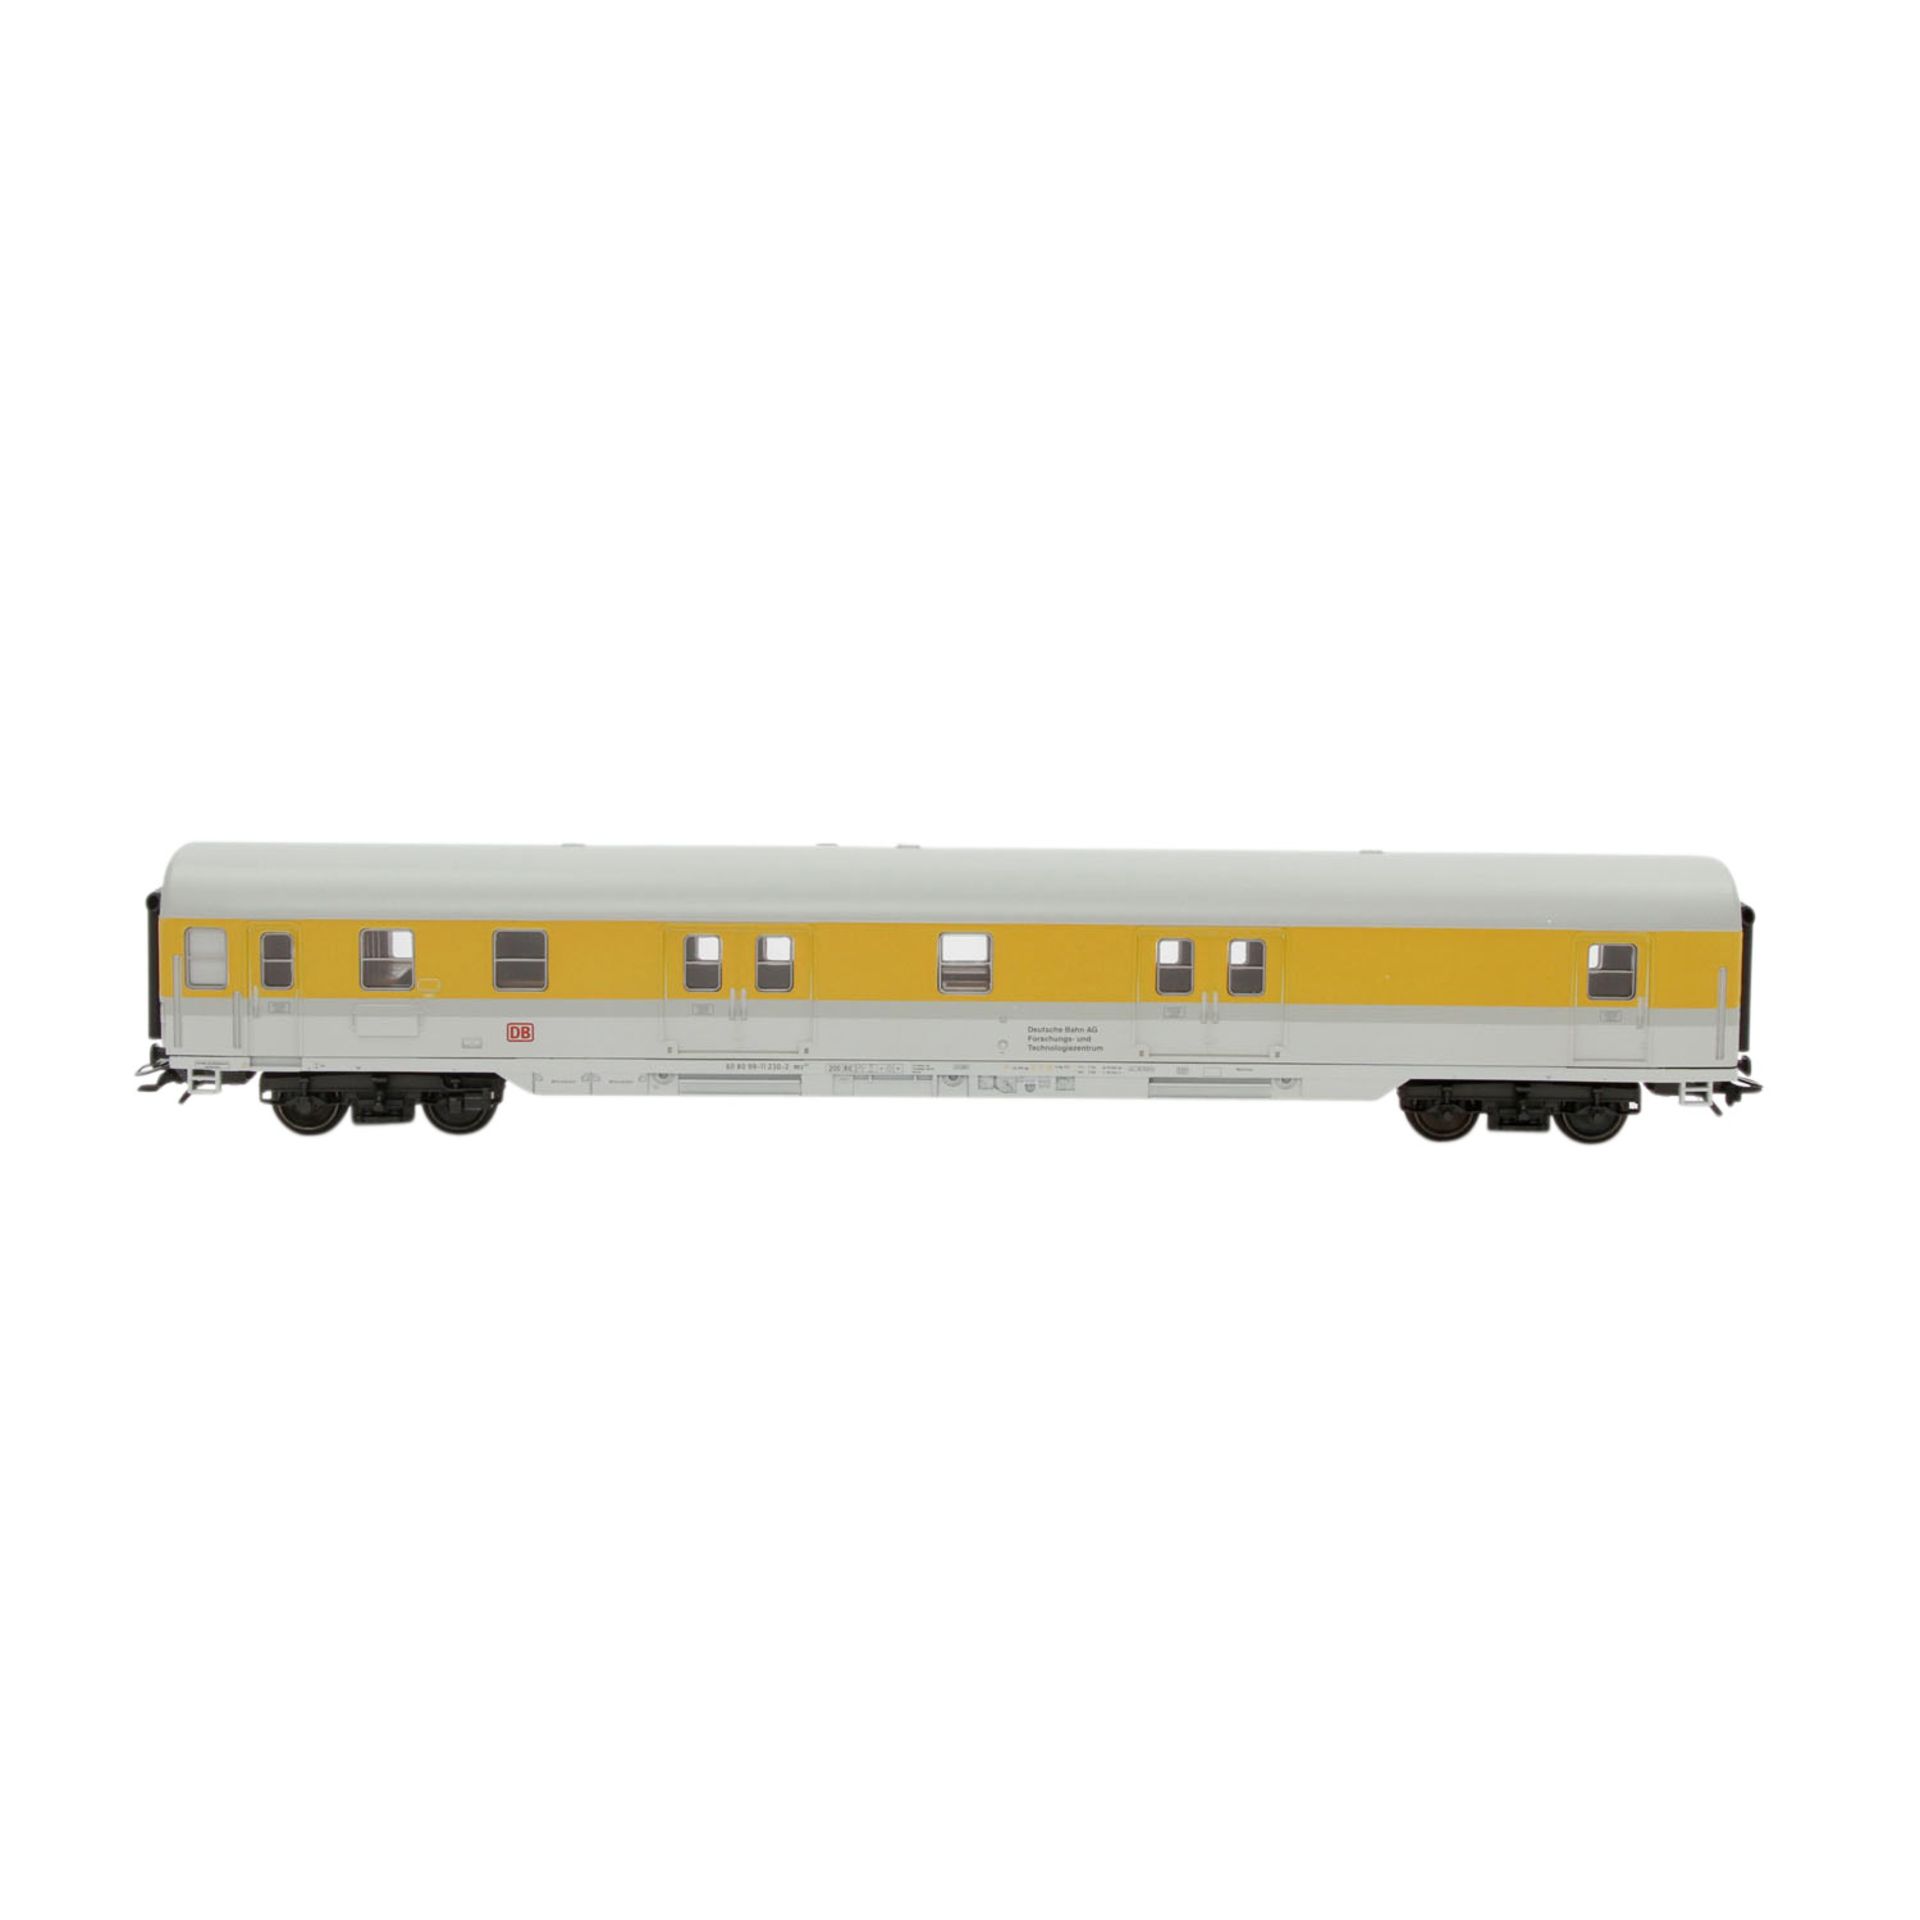 MÄRKLIN Set von drei Messwagen 42996, Spur H0,einmalige Serie, Kunststoff-Gehäuse, hellgrau/gelb, DB - Image 4 of 5